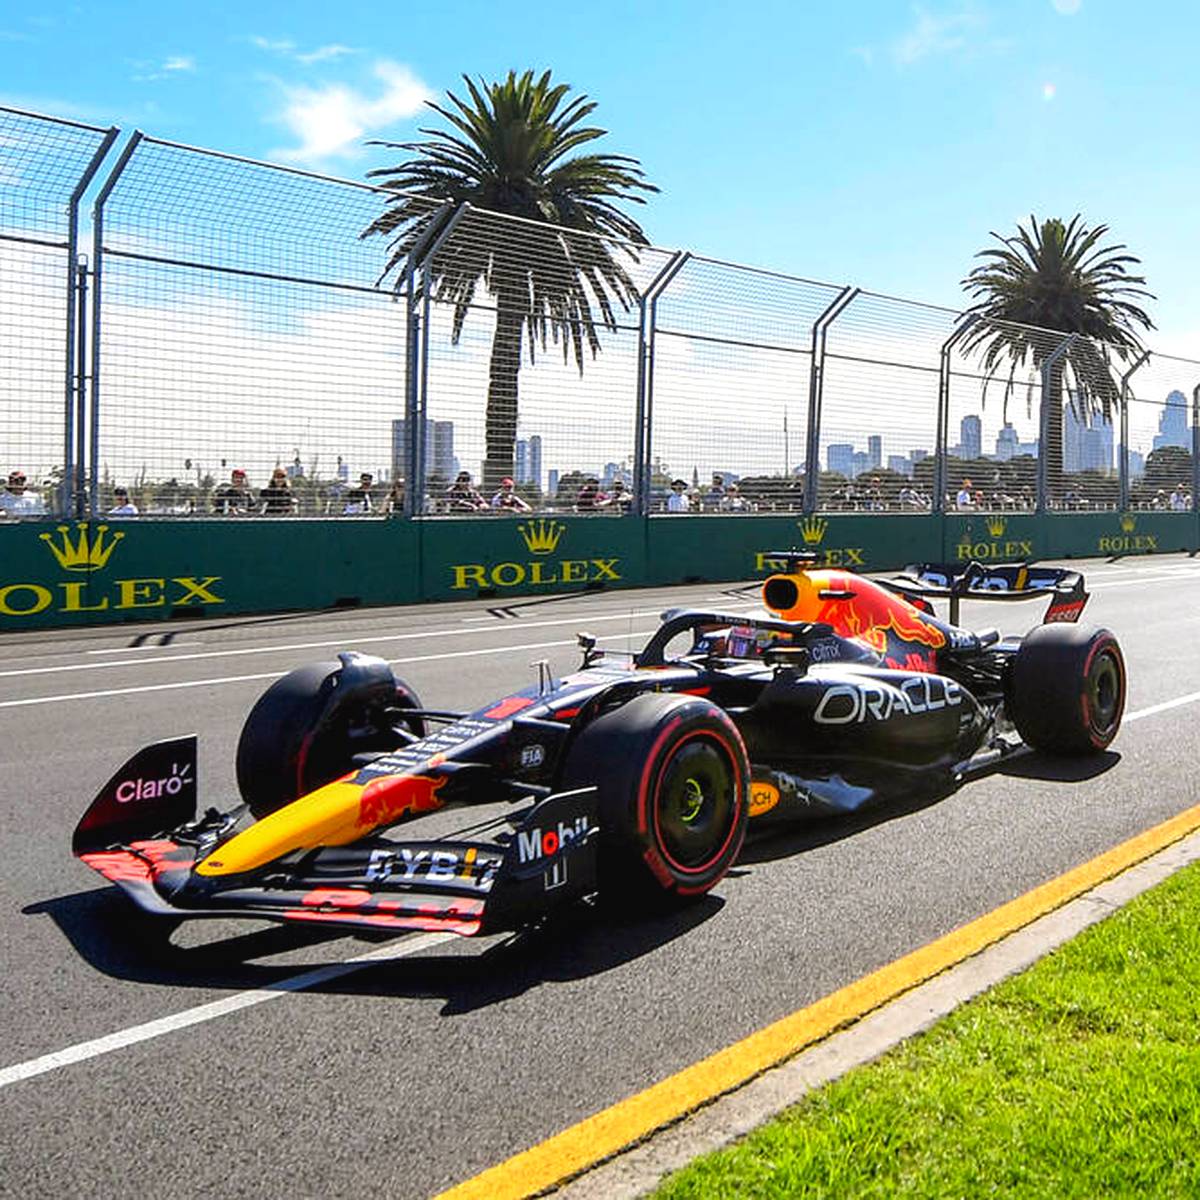 Formel 1 Qualifying in Australien LIVE Startzeit and Übertragung im TV, Stream, Ticker